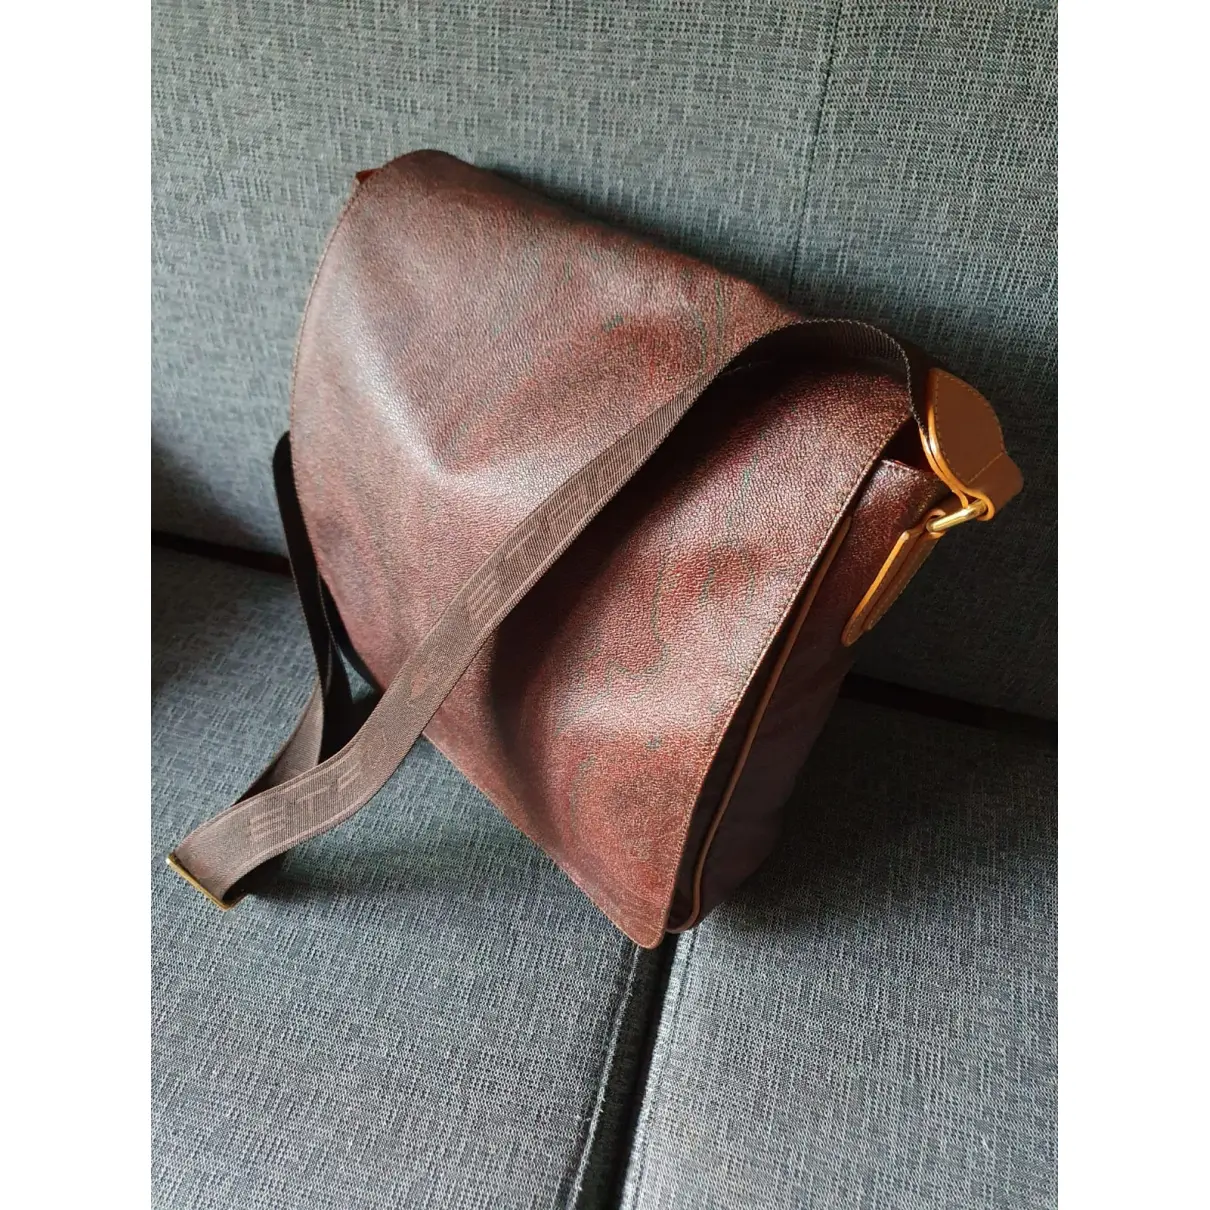 Buy Etro Leather satchel online